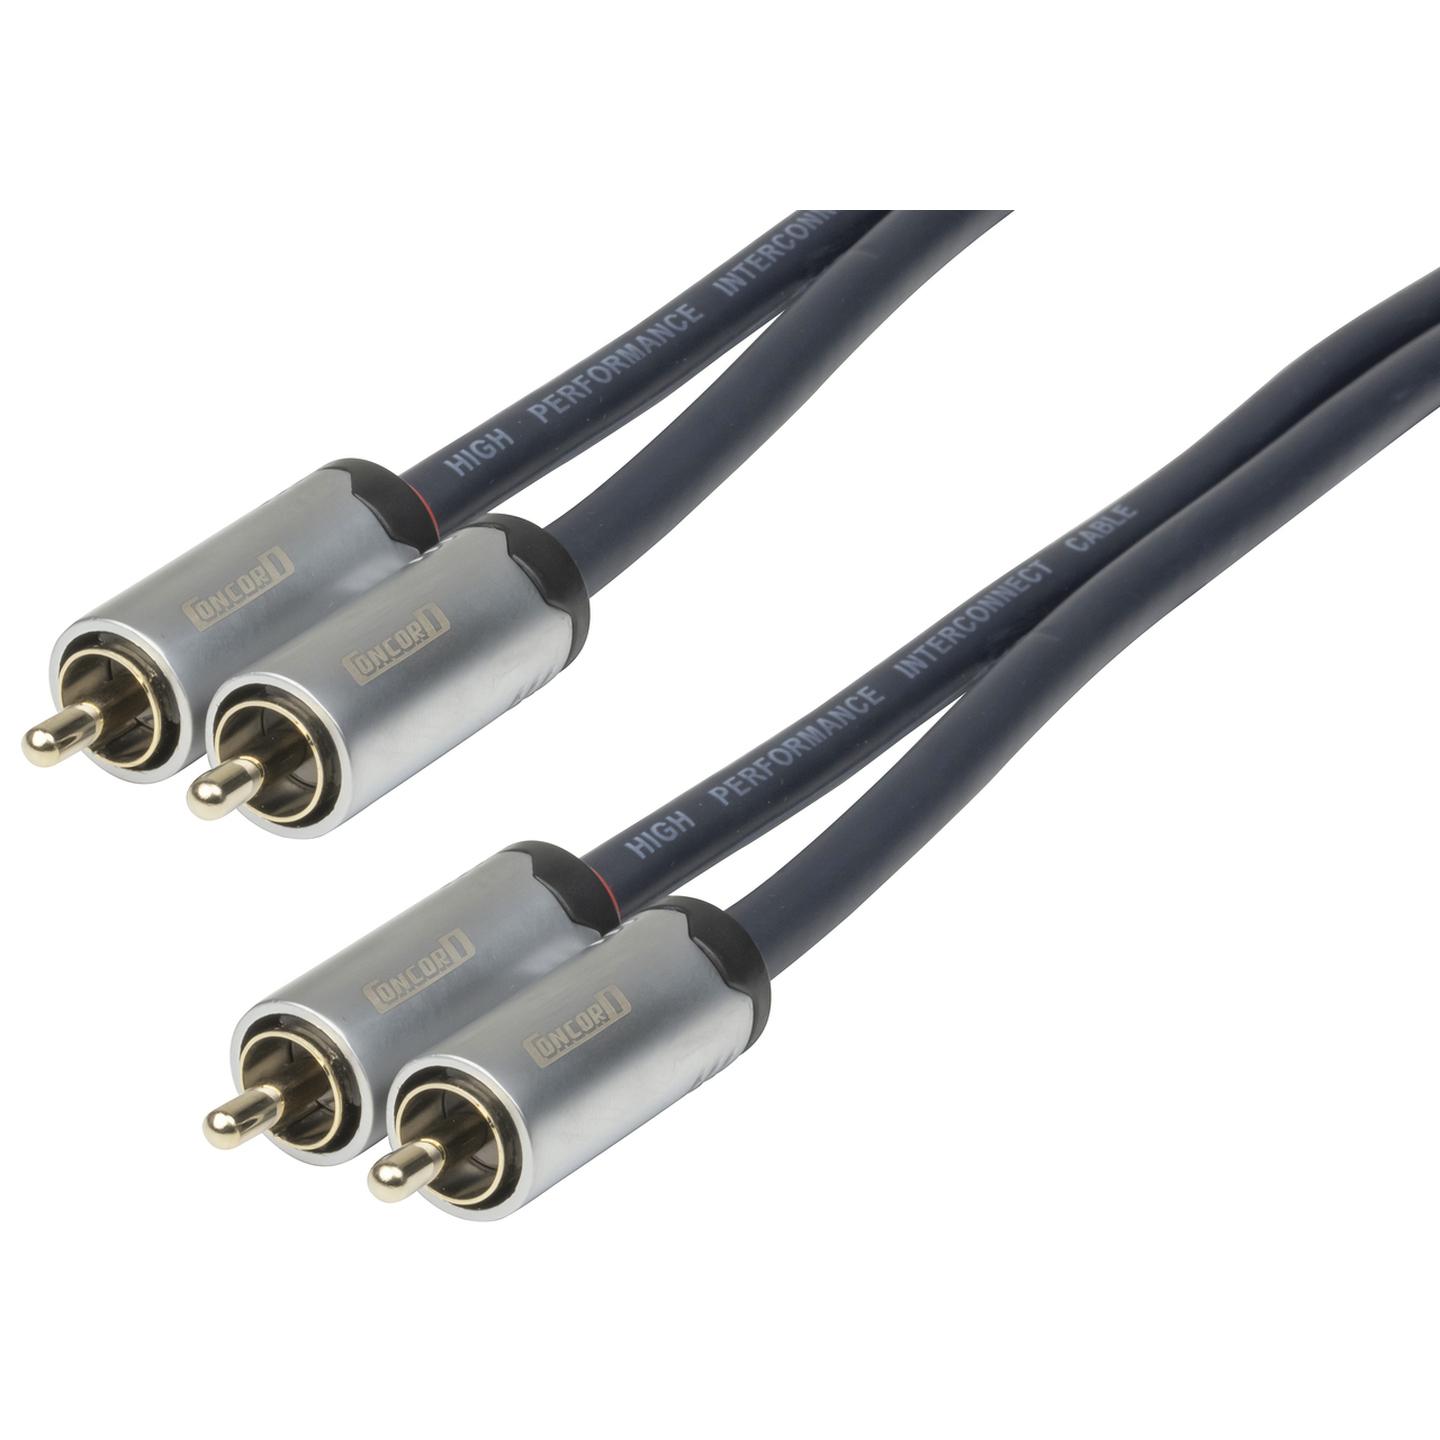 2 x RCA Plugs to 2 x RCA Plugs - 1.5m